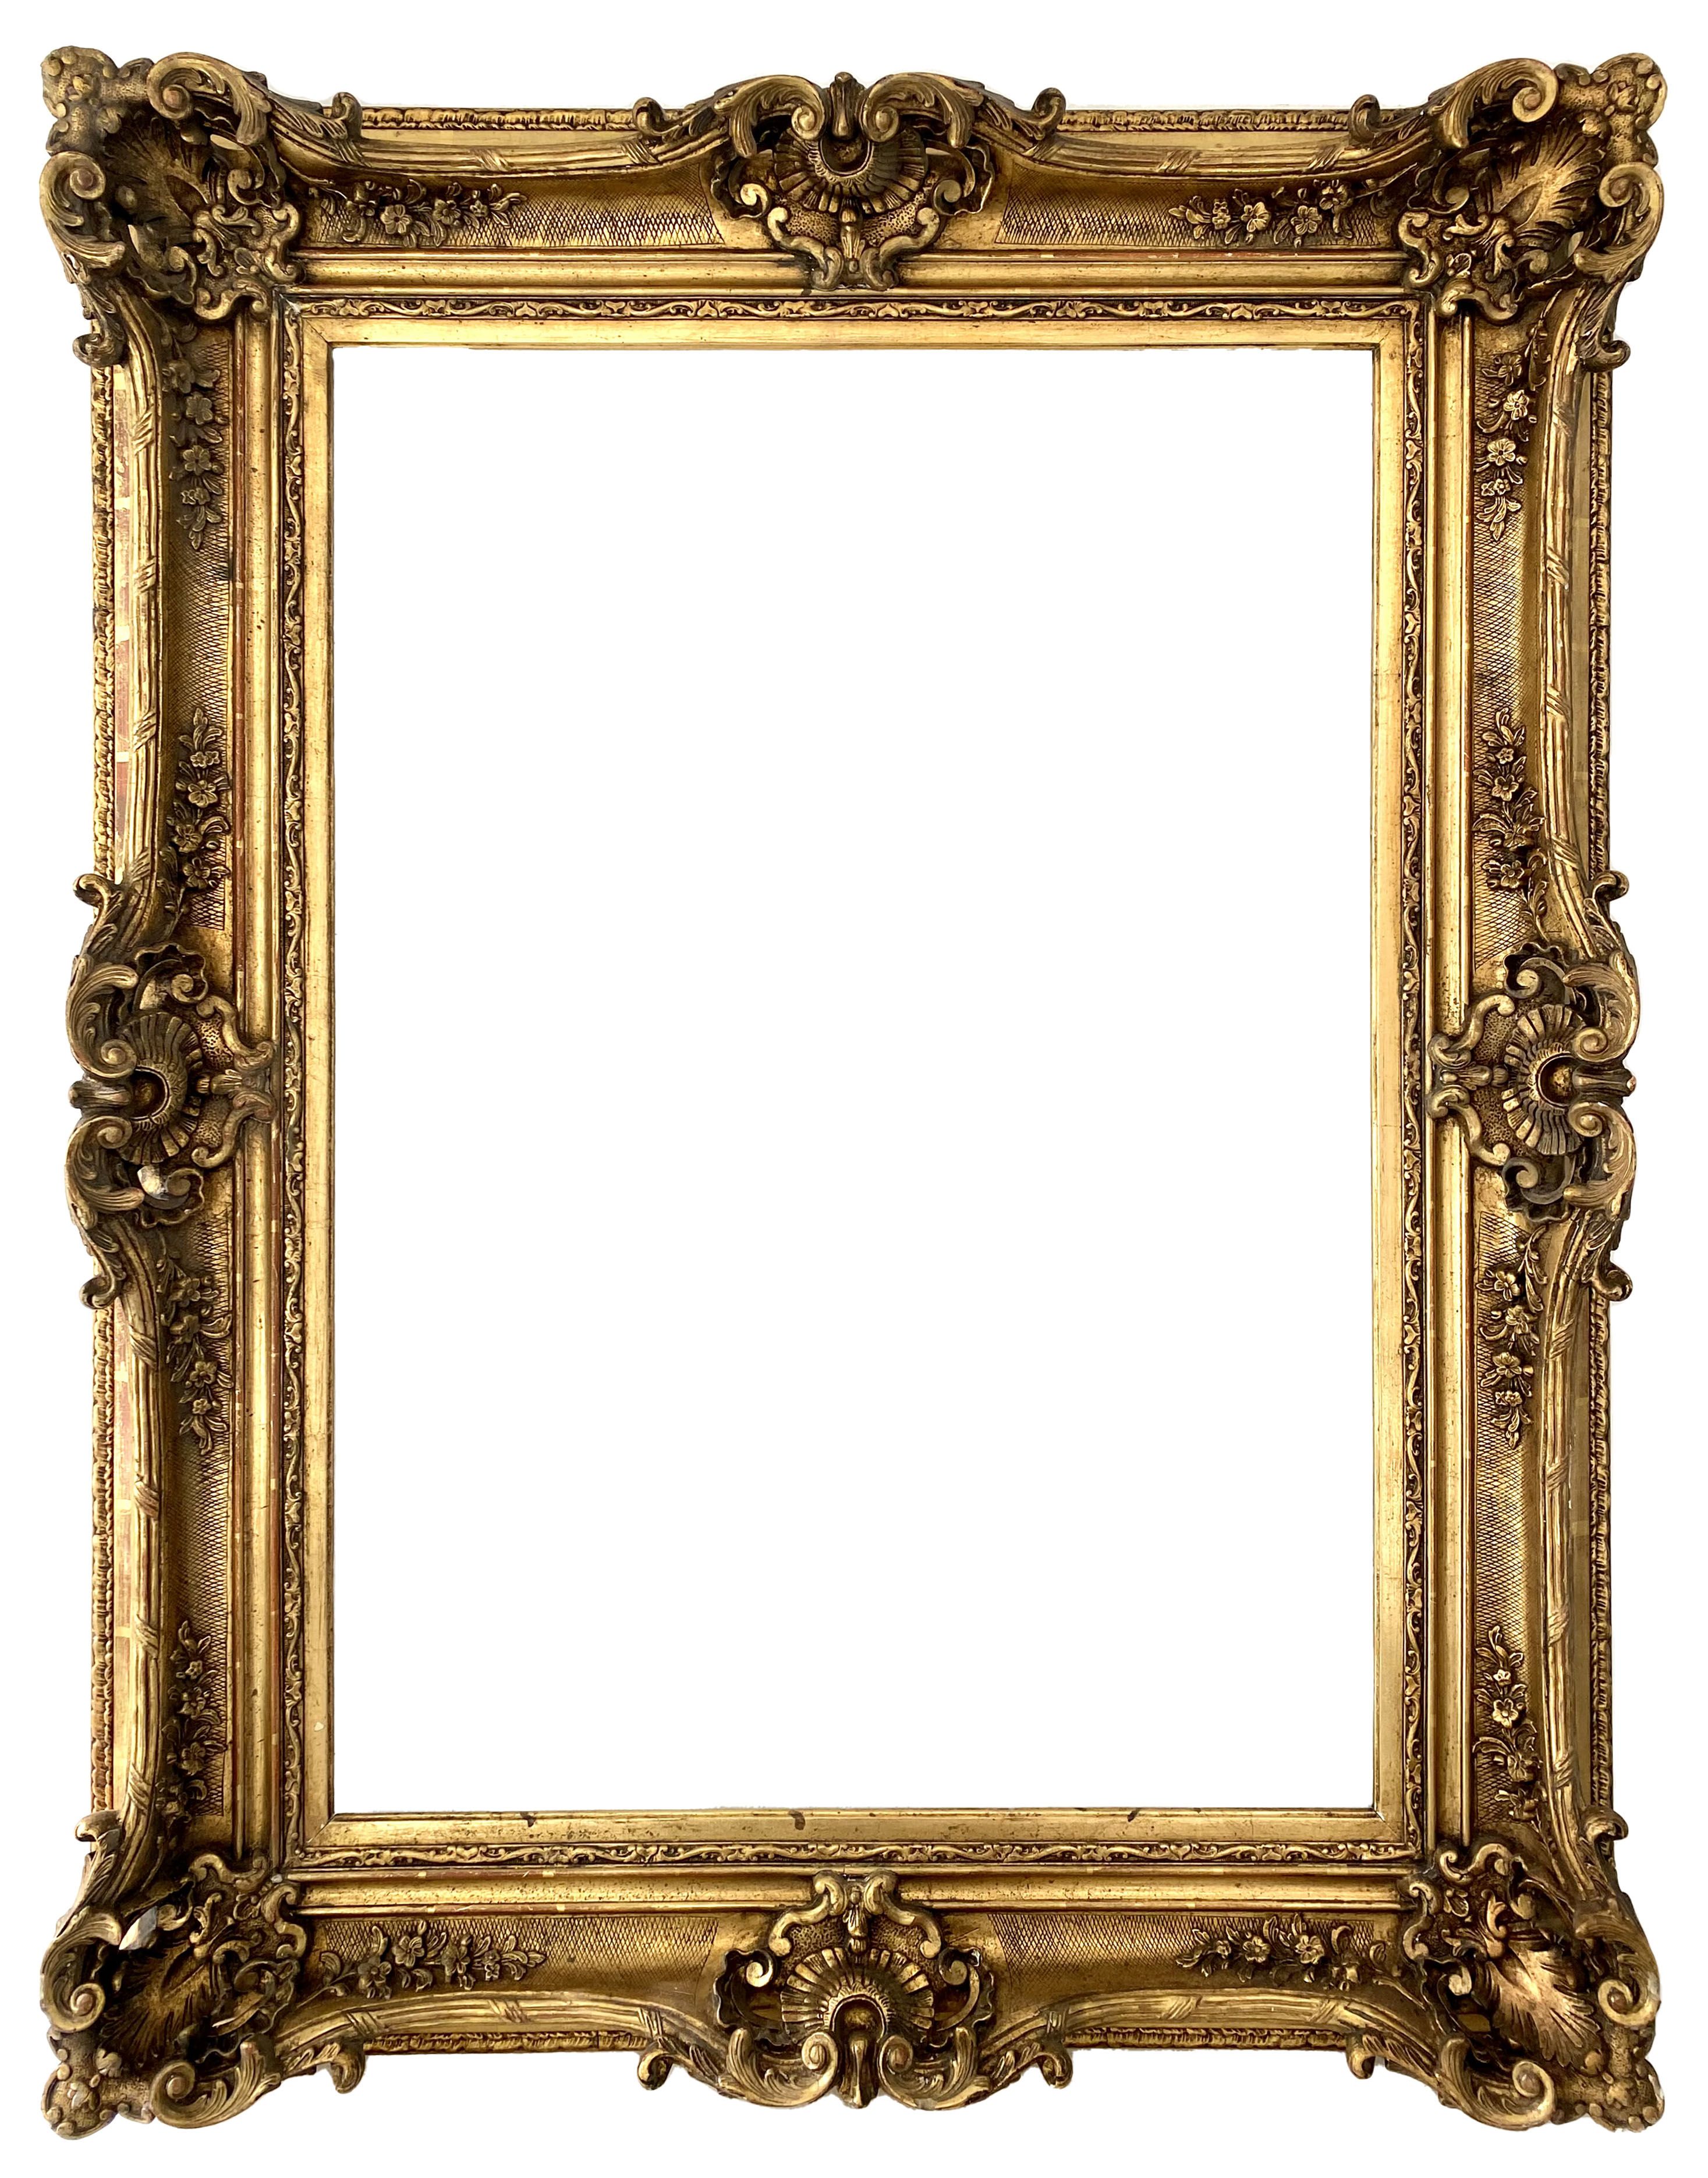 Cadre de style Louis XV - 94,00 x 67,40 - REF - 1299